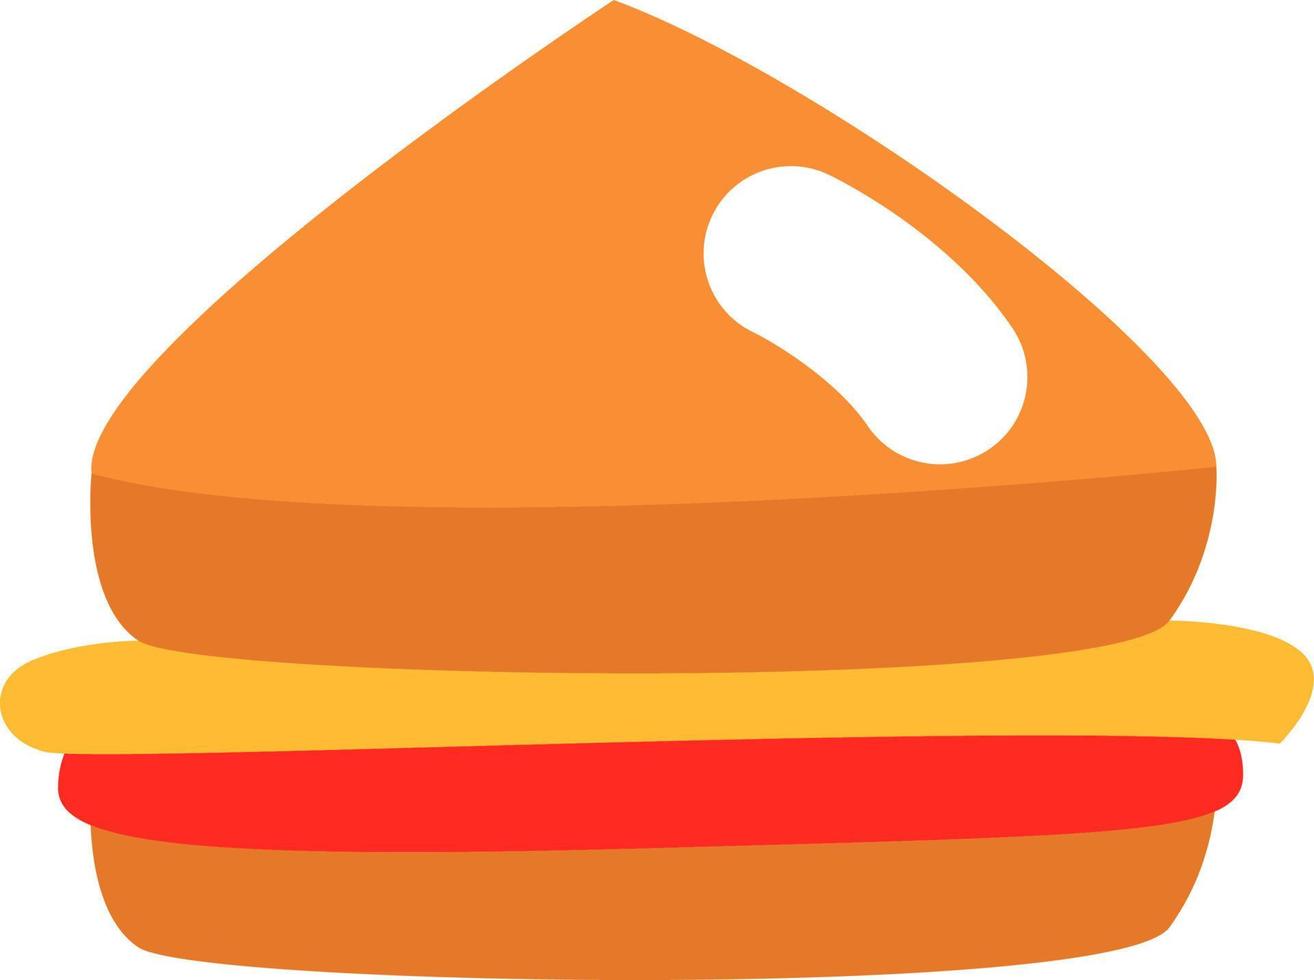 Streetfood-Sandwich, Illustration, Vektor auf weißem Hintergrund.